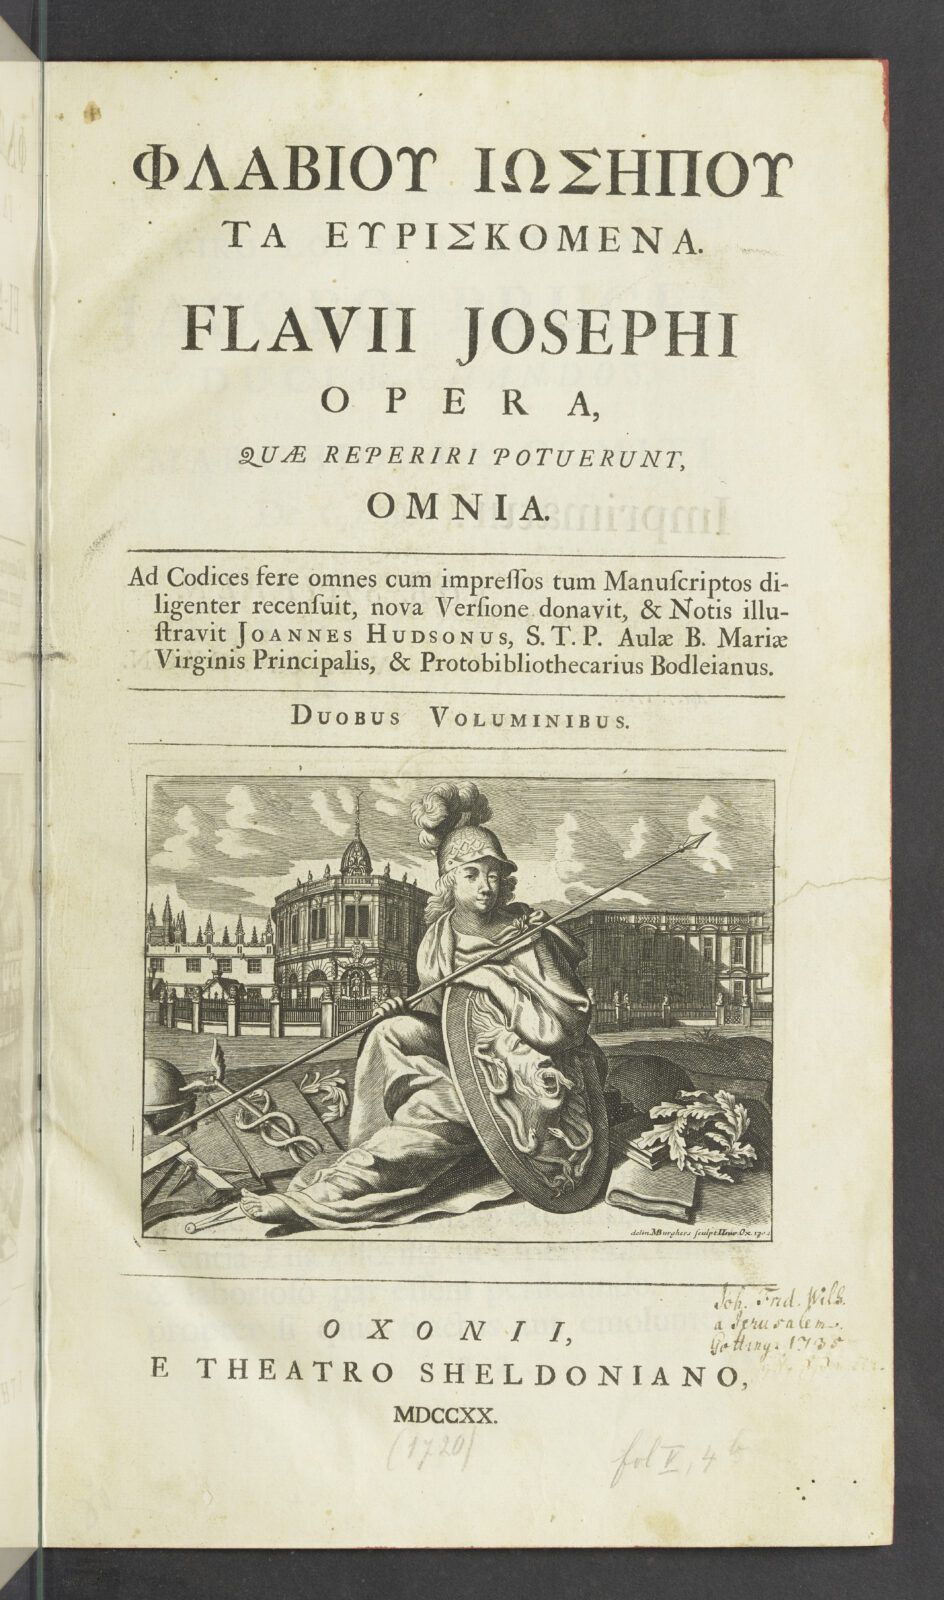 Im oberen Bereich der Titelseite ist Autorname und Titel des Buches auf Altgriechisch und Latein zu lesen, darunter findet sich eine Illustration, die eine sitzende Person mit Helm, Speer und Schutzschild vor der Oxforder Bodleian Library zeigt.